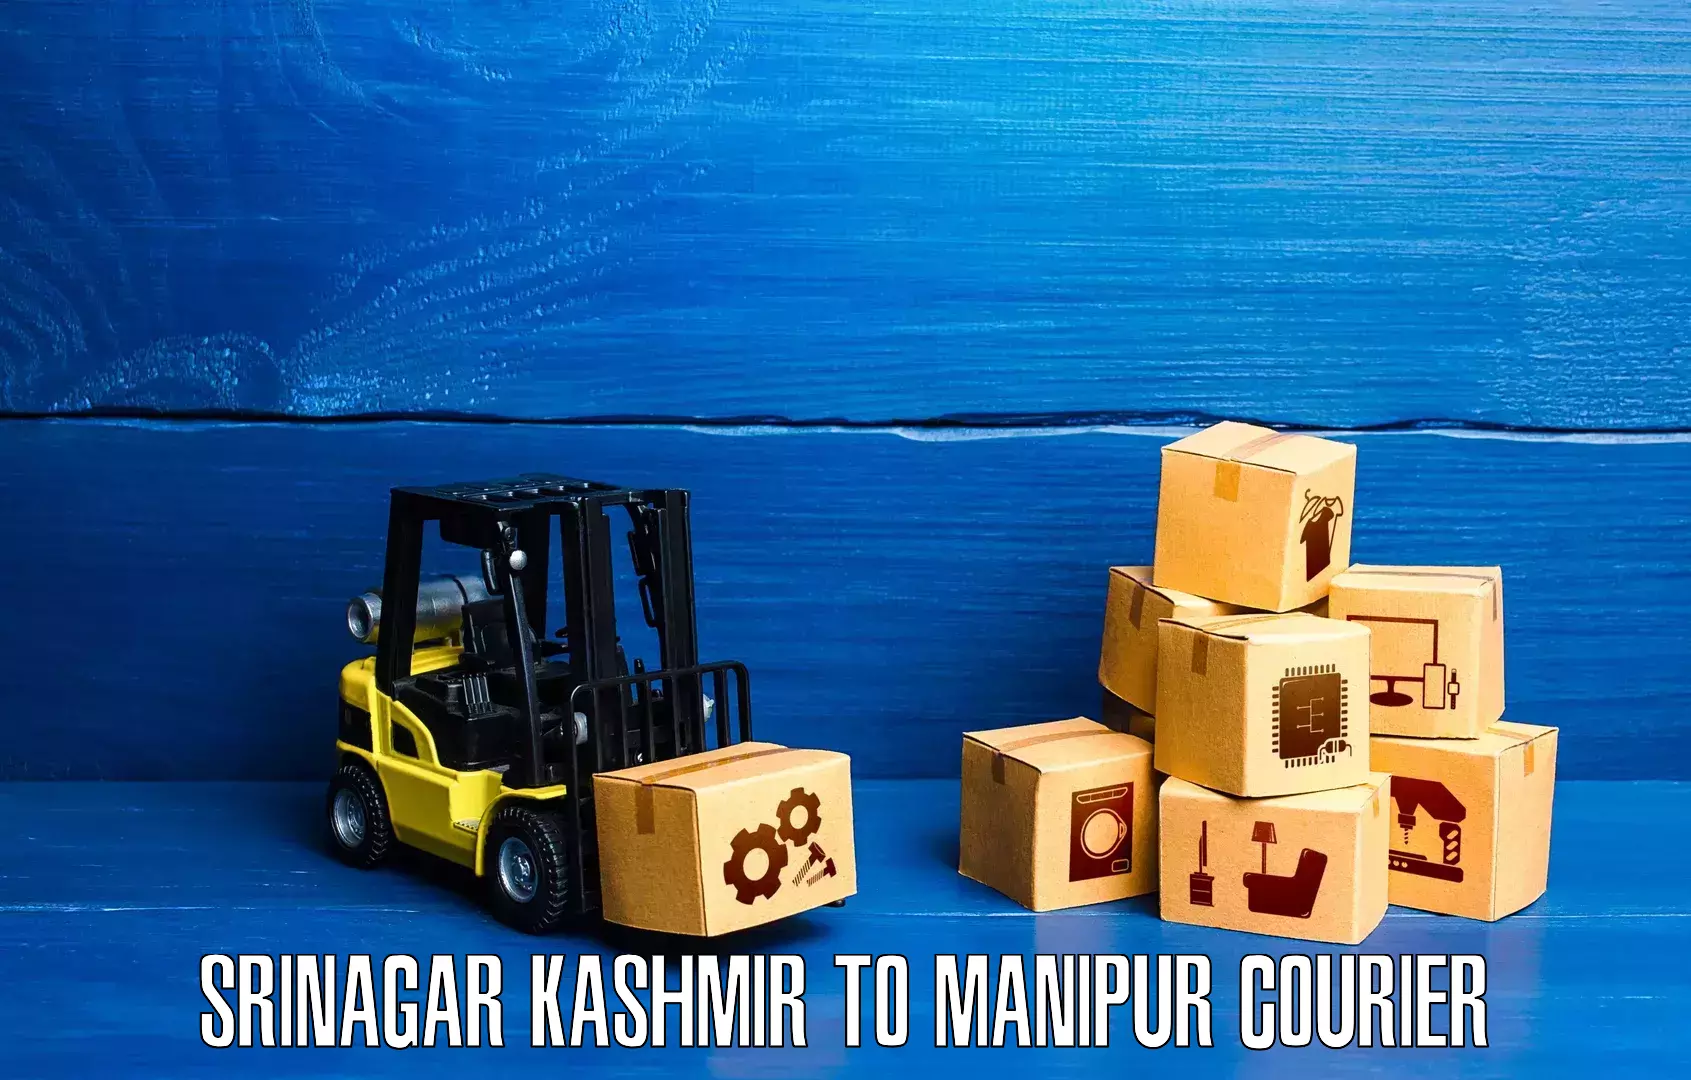 User-friendly delivery service Srinagar Kashmir to Ukhrul